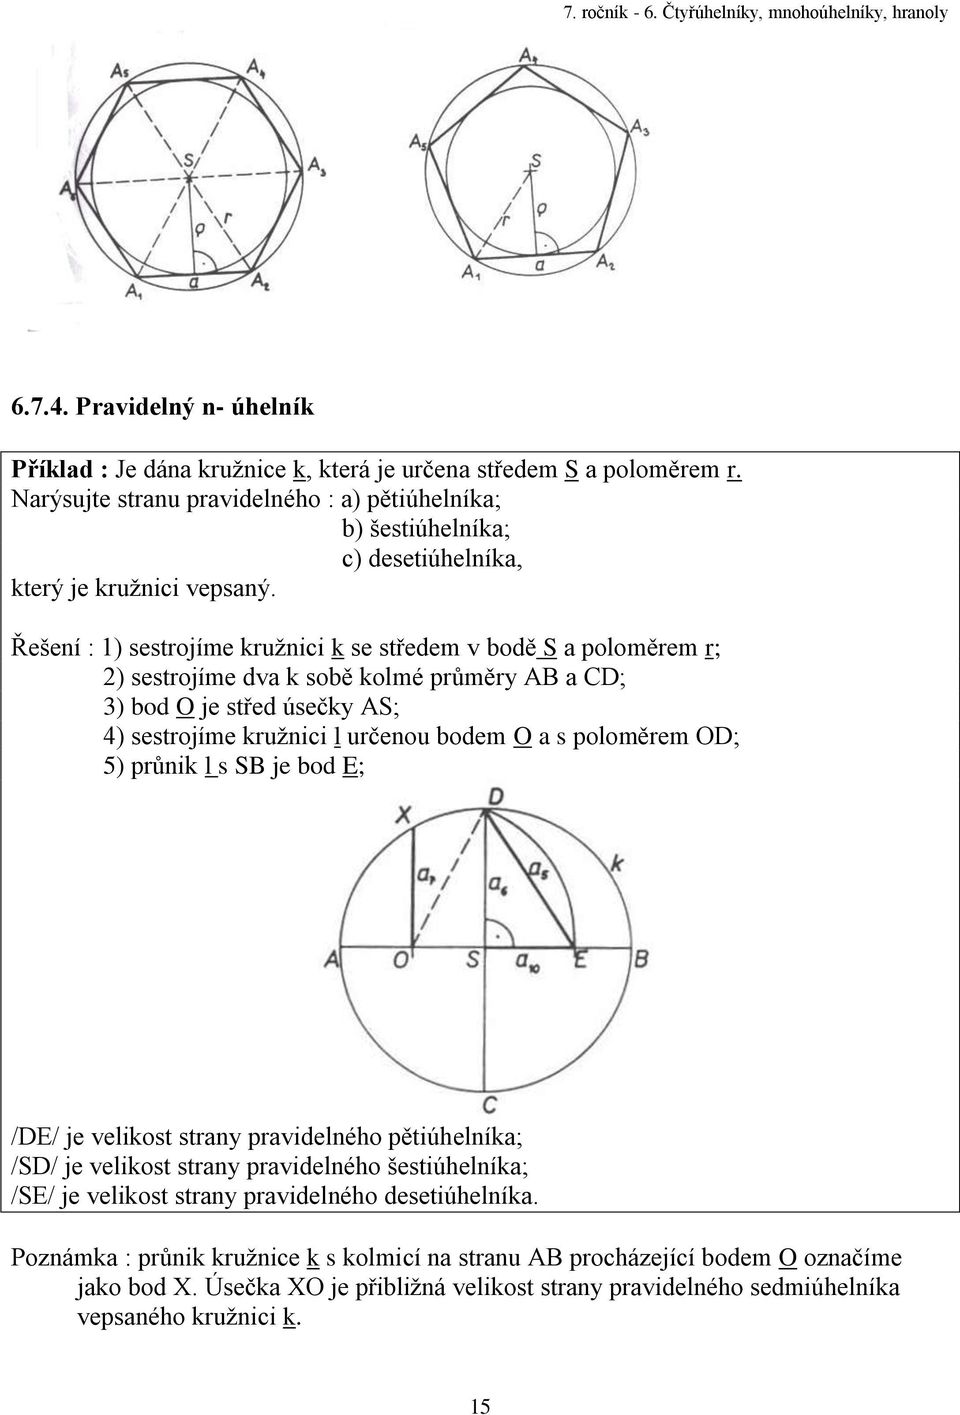 Řešení : 1) sestrojíme kružnici k se středem v bodě S a poloměrem r; 2) sestrojíme dva k sobě kolmé průměry AB a CD; 3) bod O je střed úsečky AS; 4) sestrojíme kružnici l určenou bodem O a s